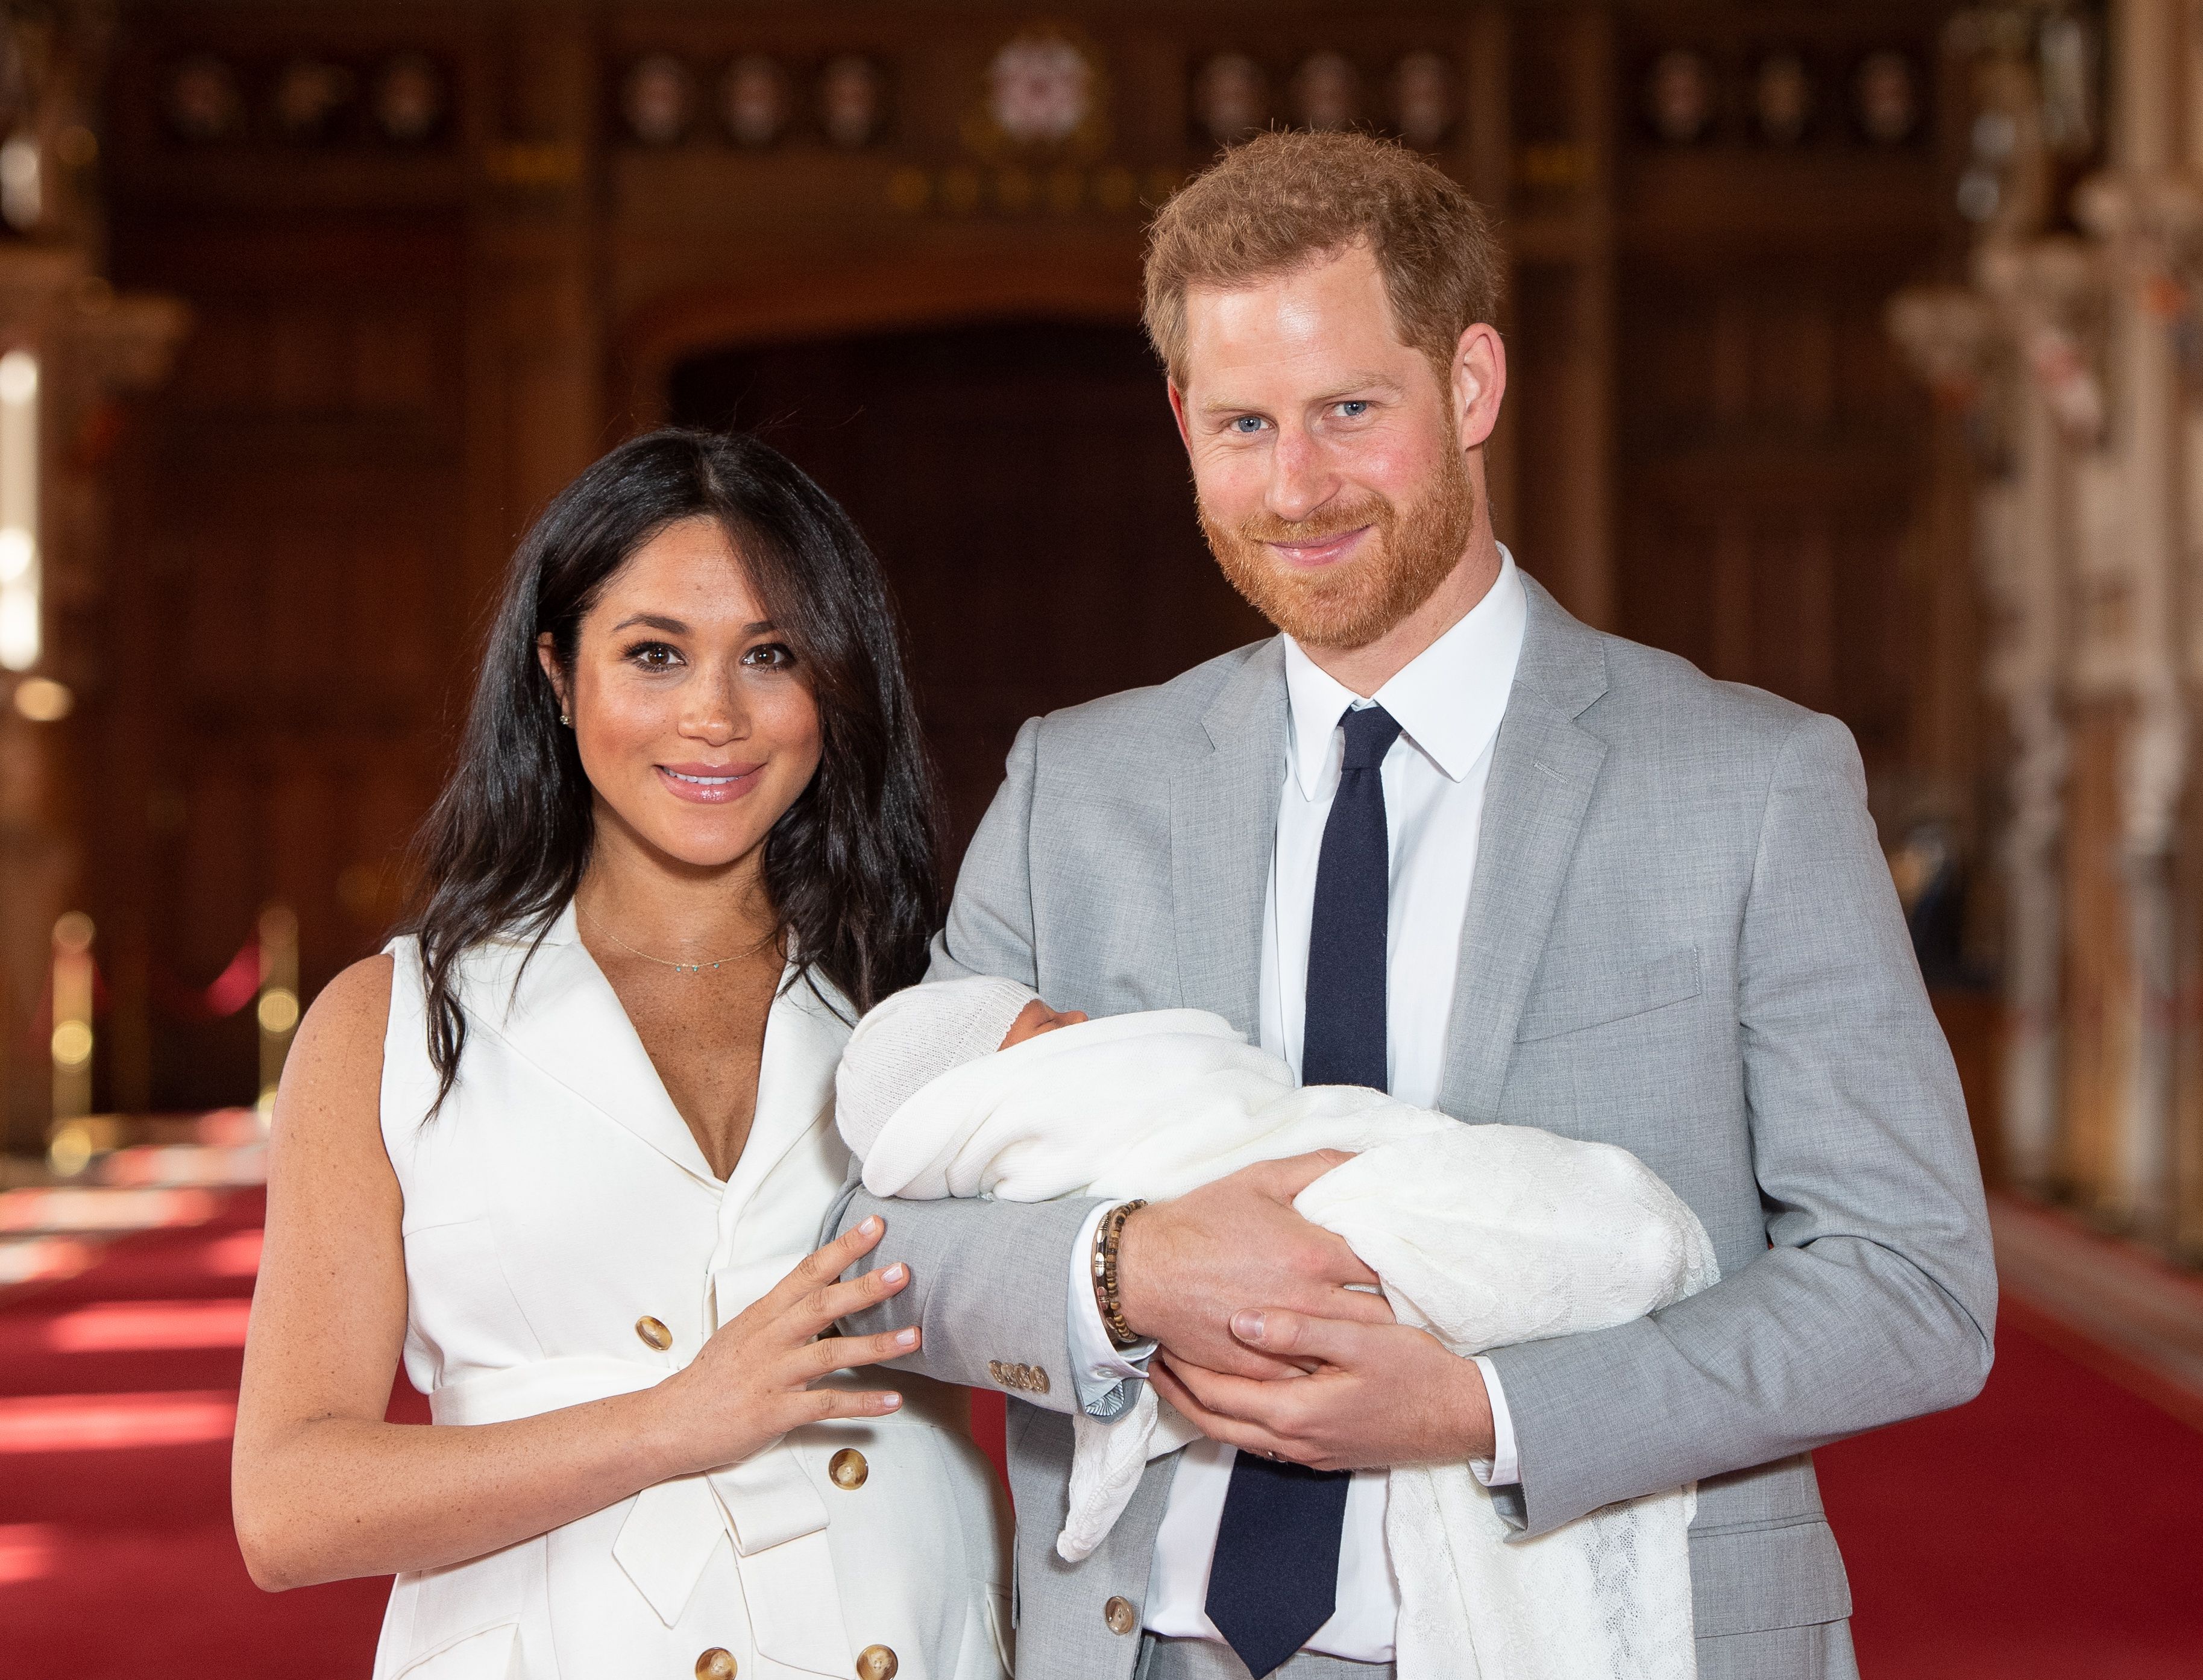 Prinz Harry und Meghan Markle posieren mit ihrem neugeborenen Sohn Archie Harrison Mountbatten-Windsor in der St. George's Hall auf Schloss Windsor am 8. Mai 2019 in Windsor, England. | Quelle: Getty Images